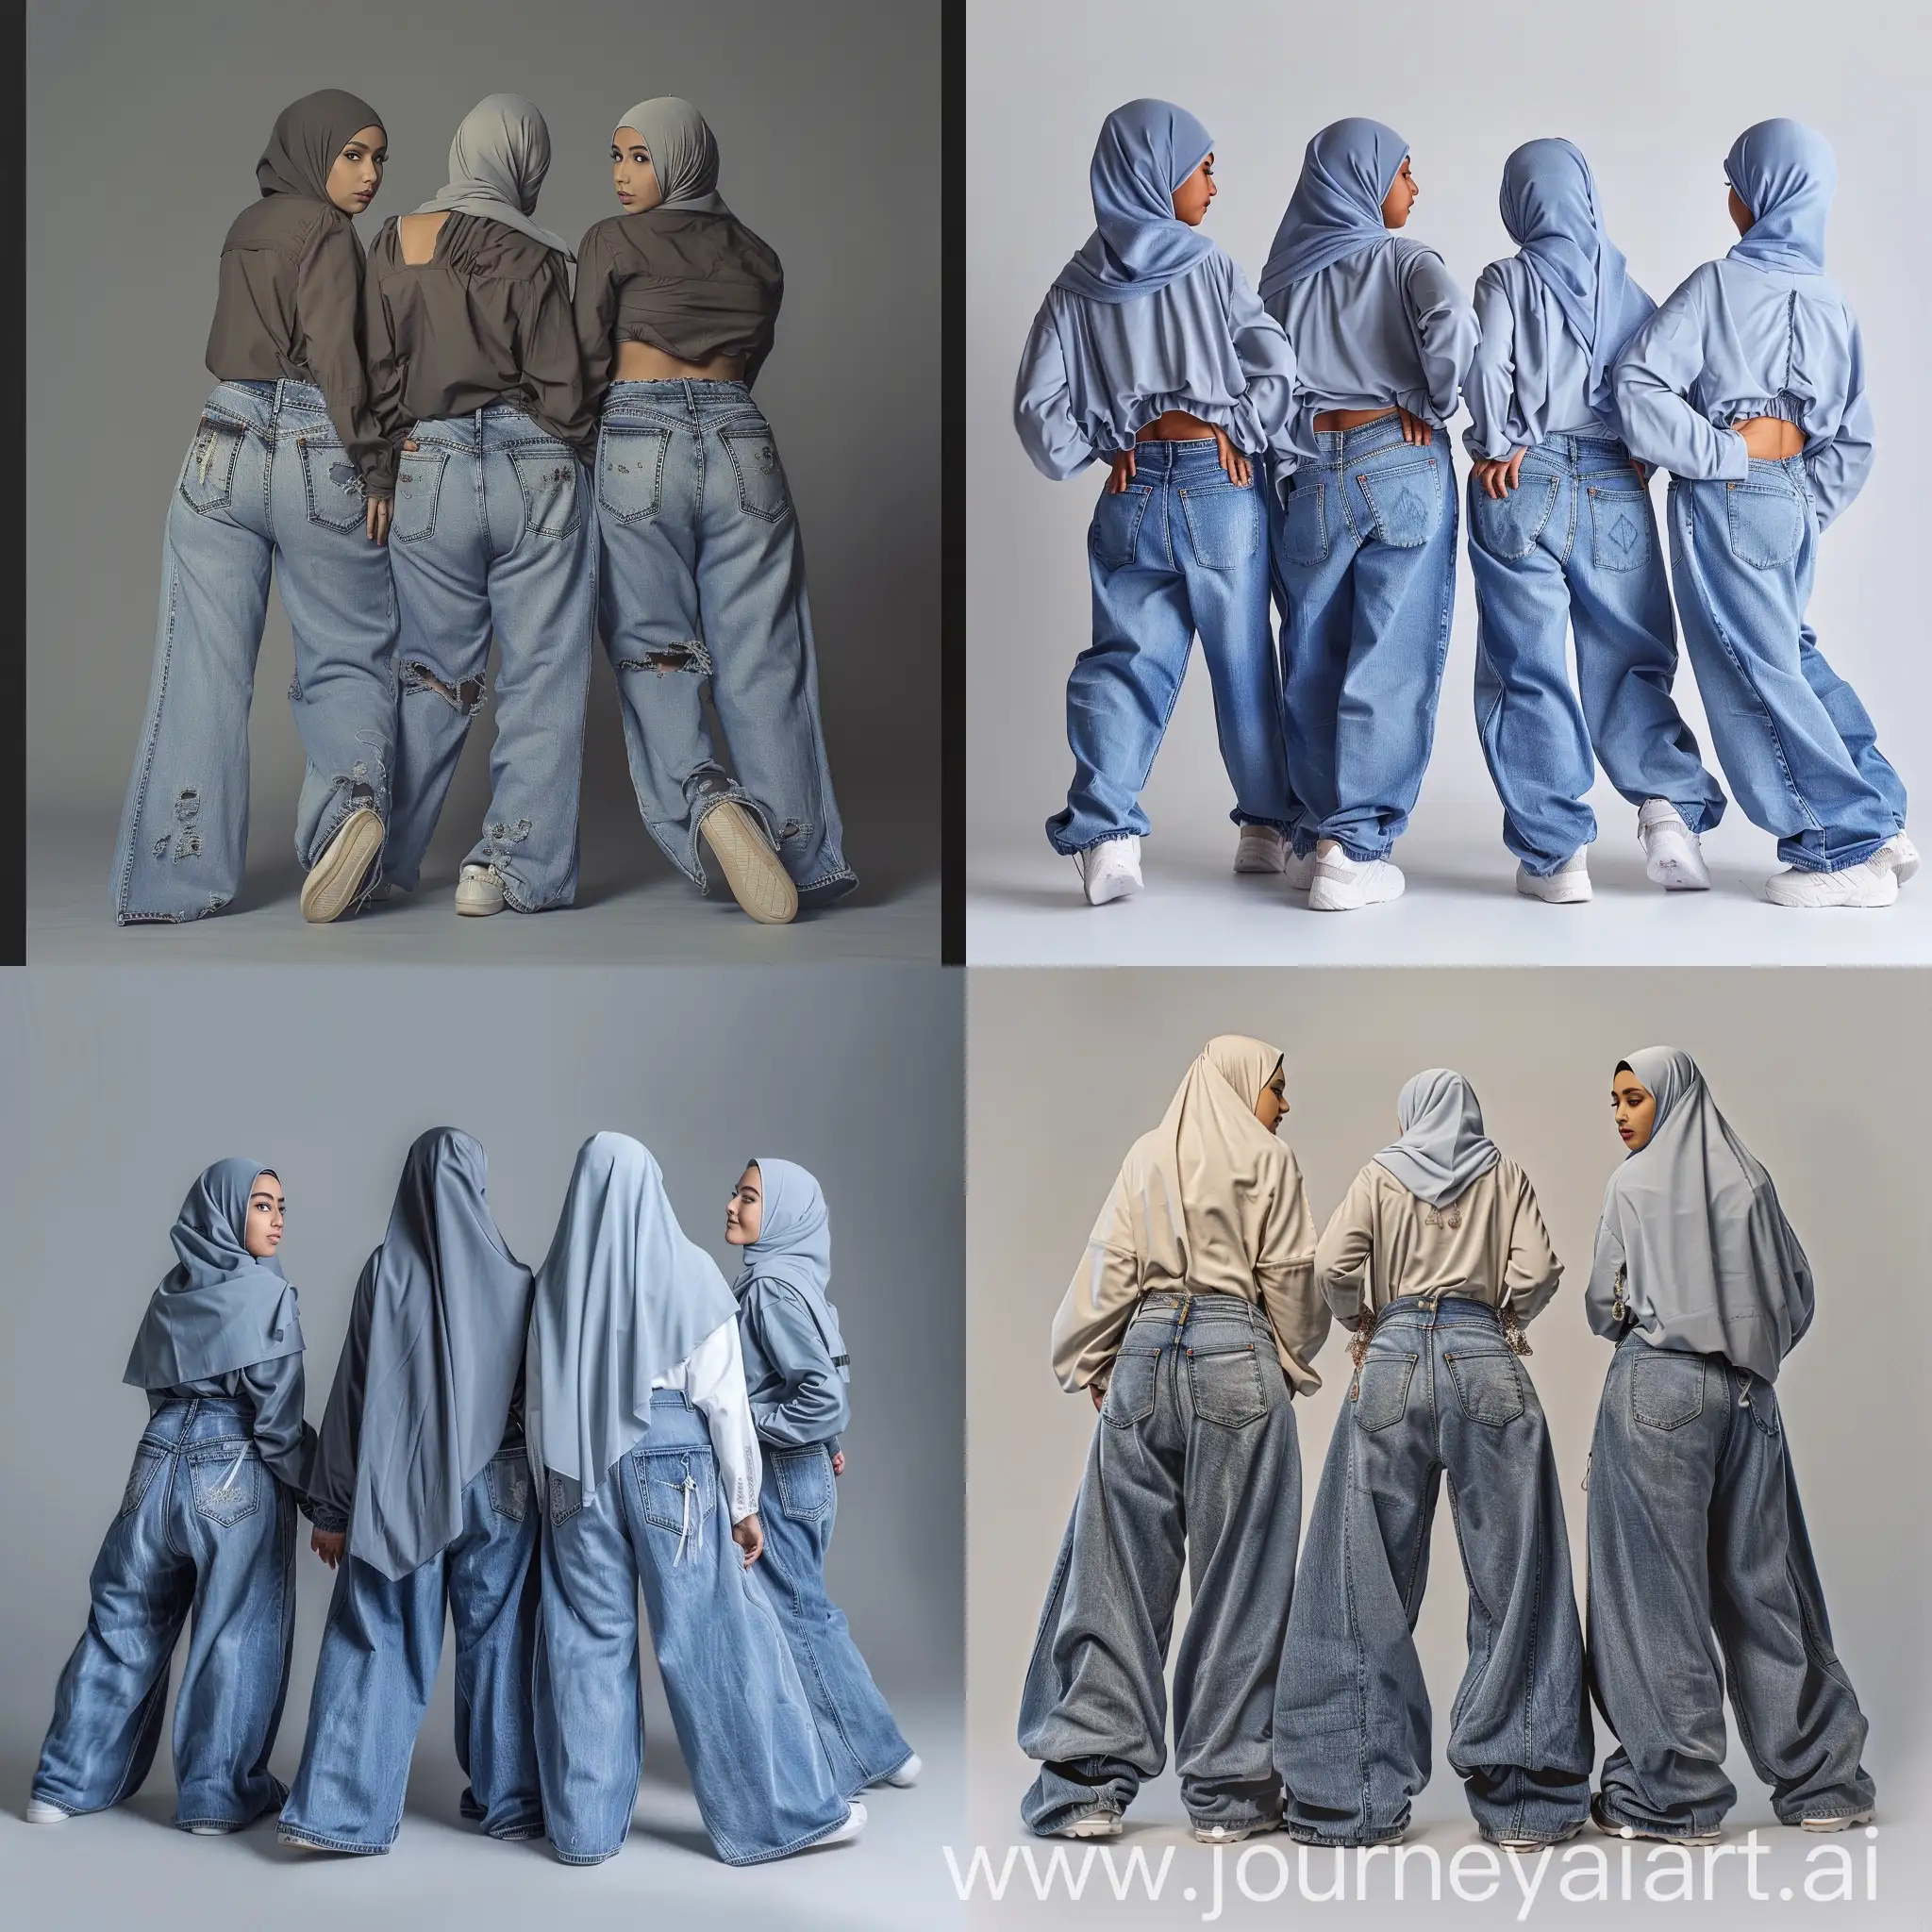 Four-Young-Hijabi-Women-in-XL-Jeans-Gazing-Backward